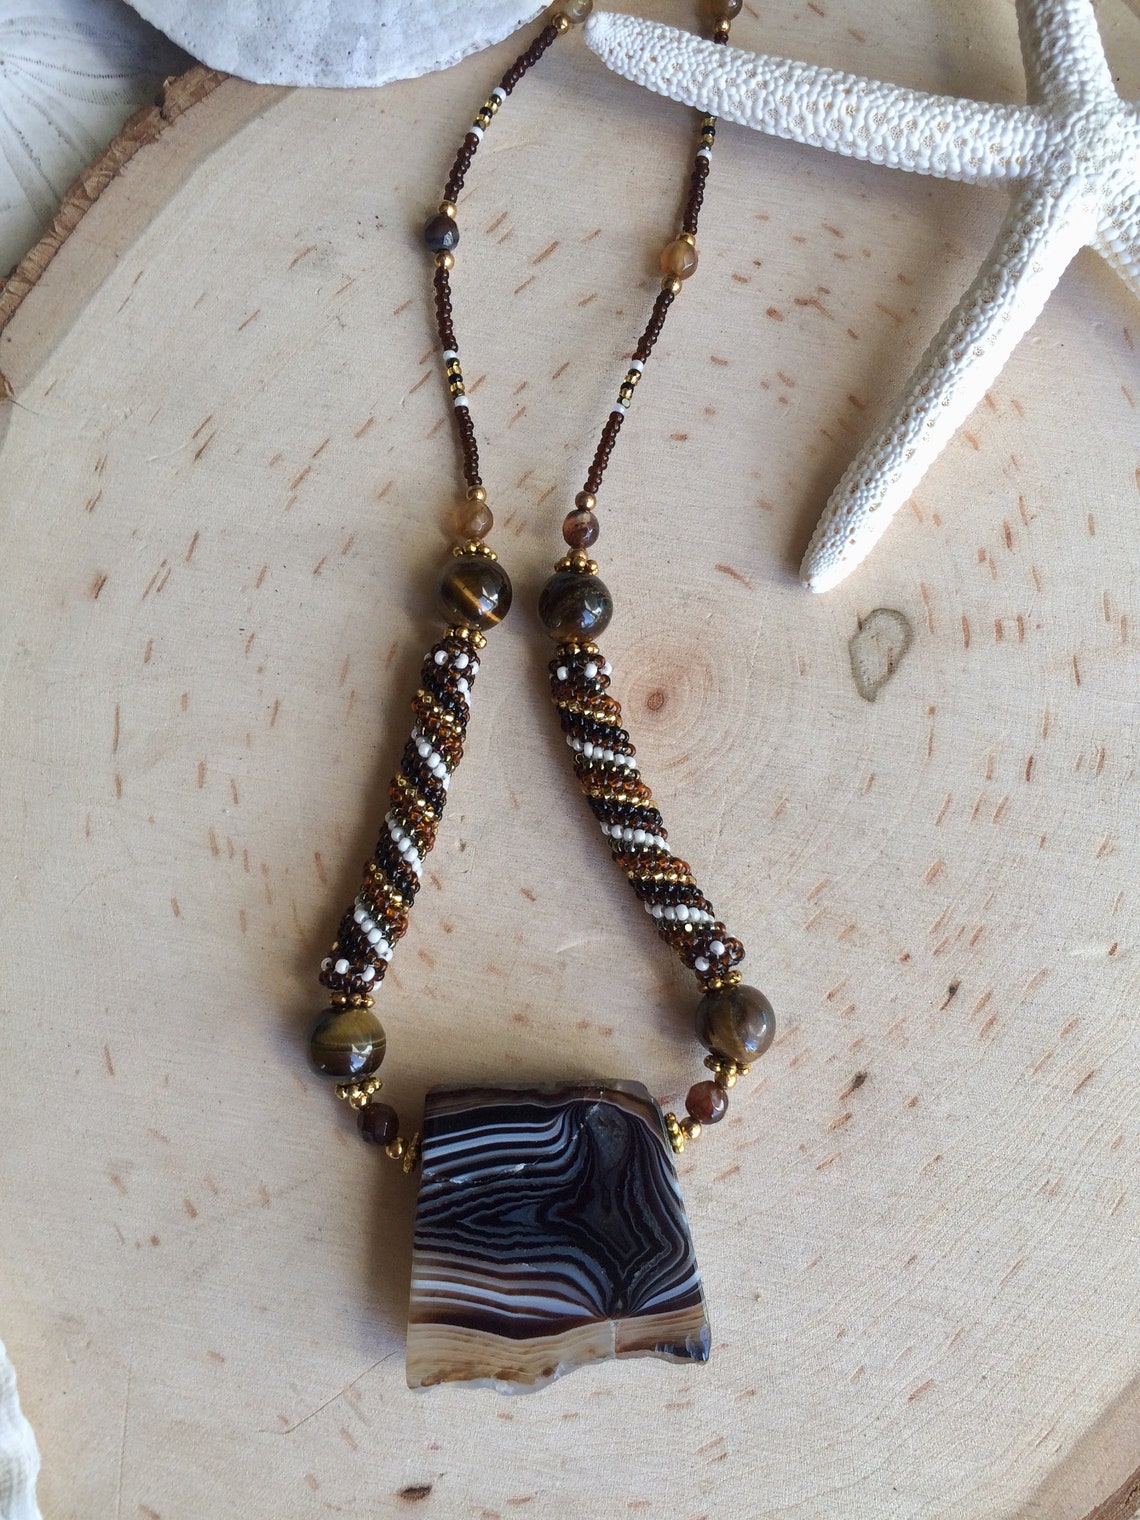 Sardonyx stone necklace brown peyote necklace beaded gemstone | Etsy